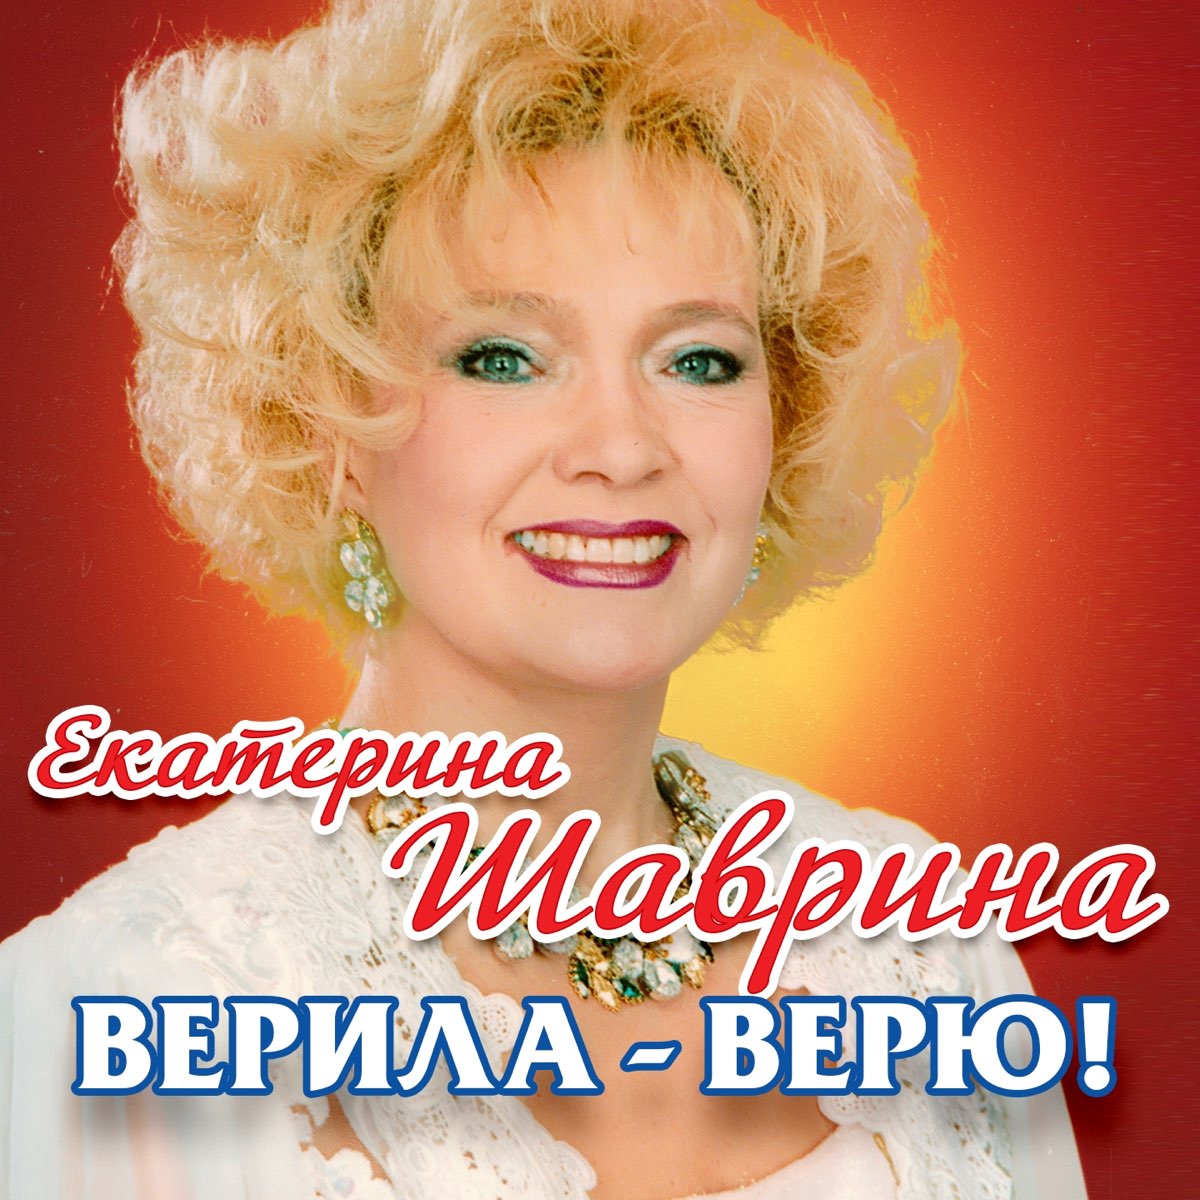 Русская песня верила верю. Шаврина 1990.